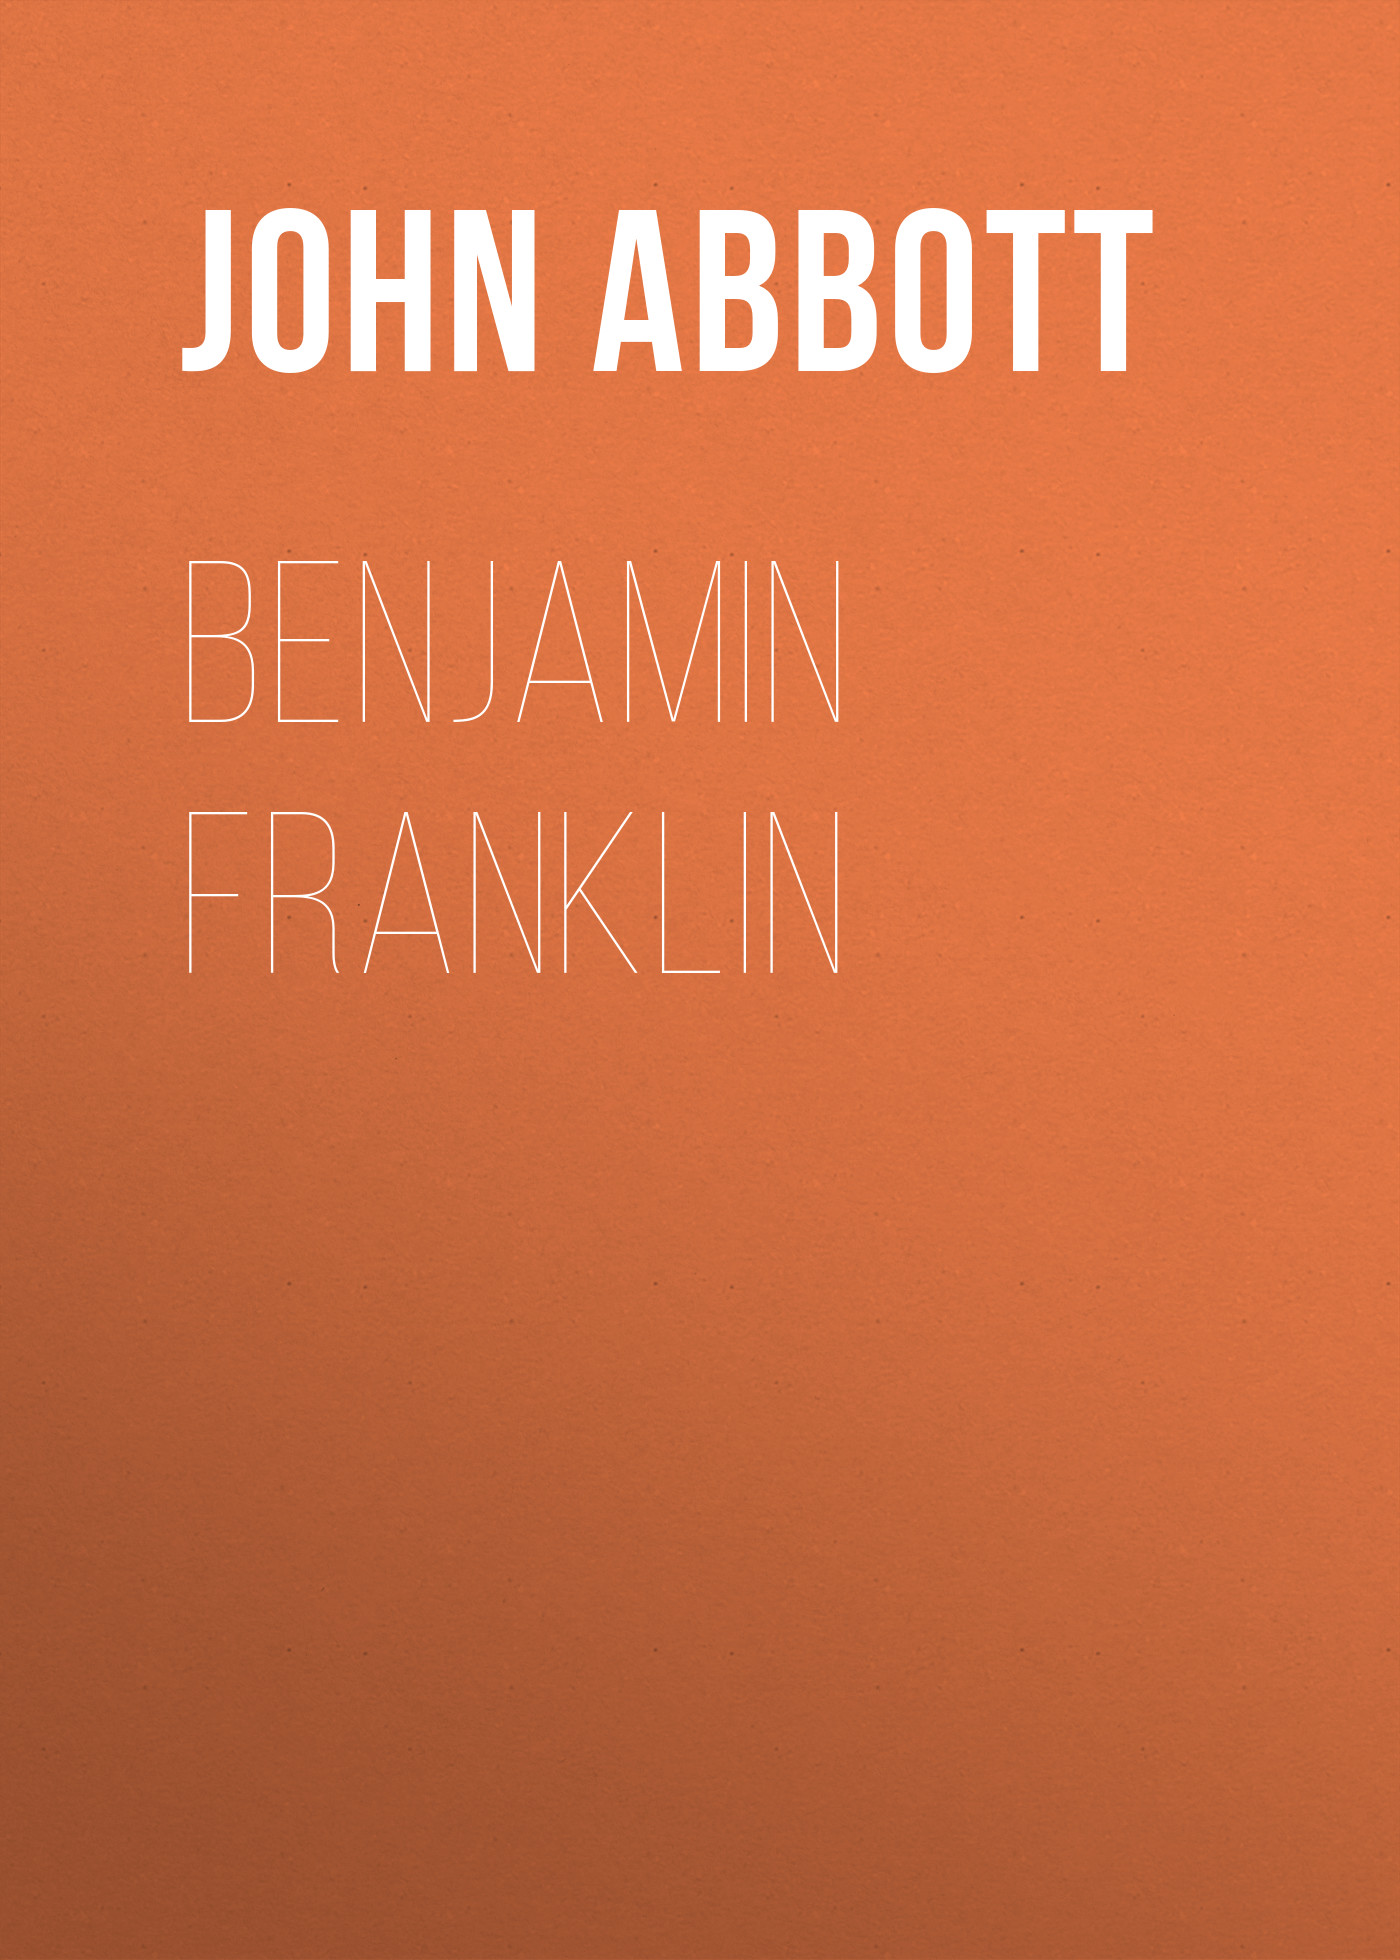 Книга Benjamin Franklin из серии , созданная John Abbott, может относится к жанру Зарубежная старинная литература, Зарубежная классика. Стоимость электронной книги Benjamin Franklin с идентификатором 24173236 составляет 5.99 руб.